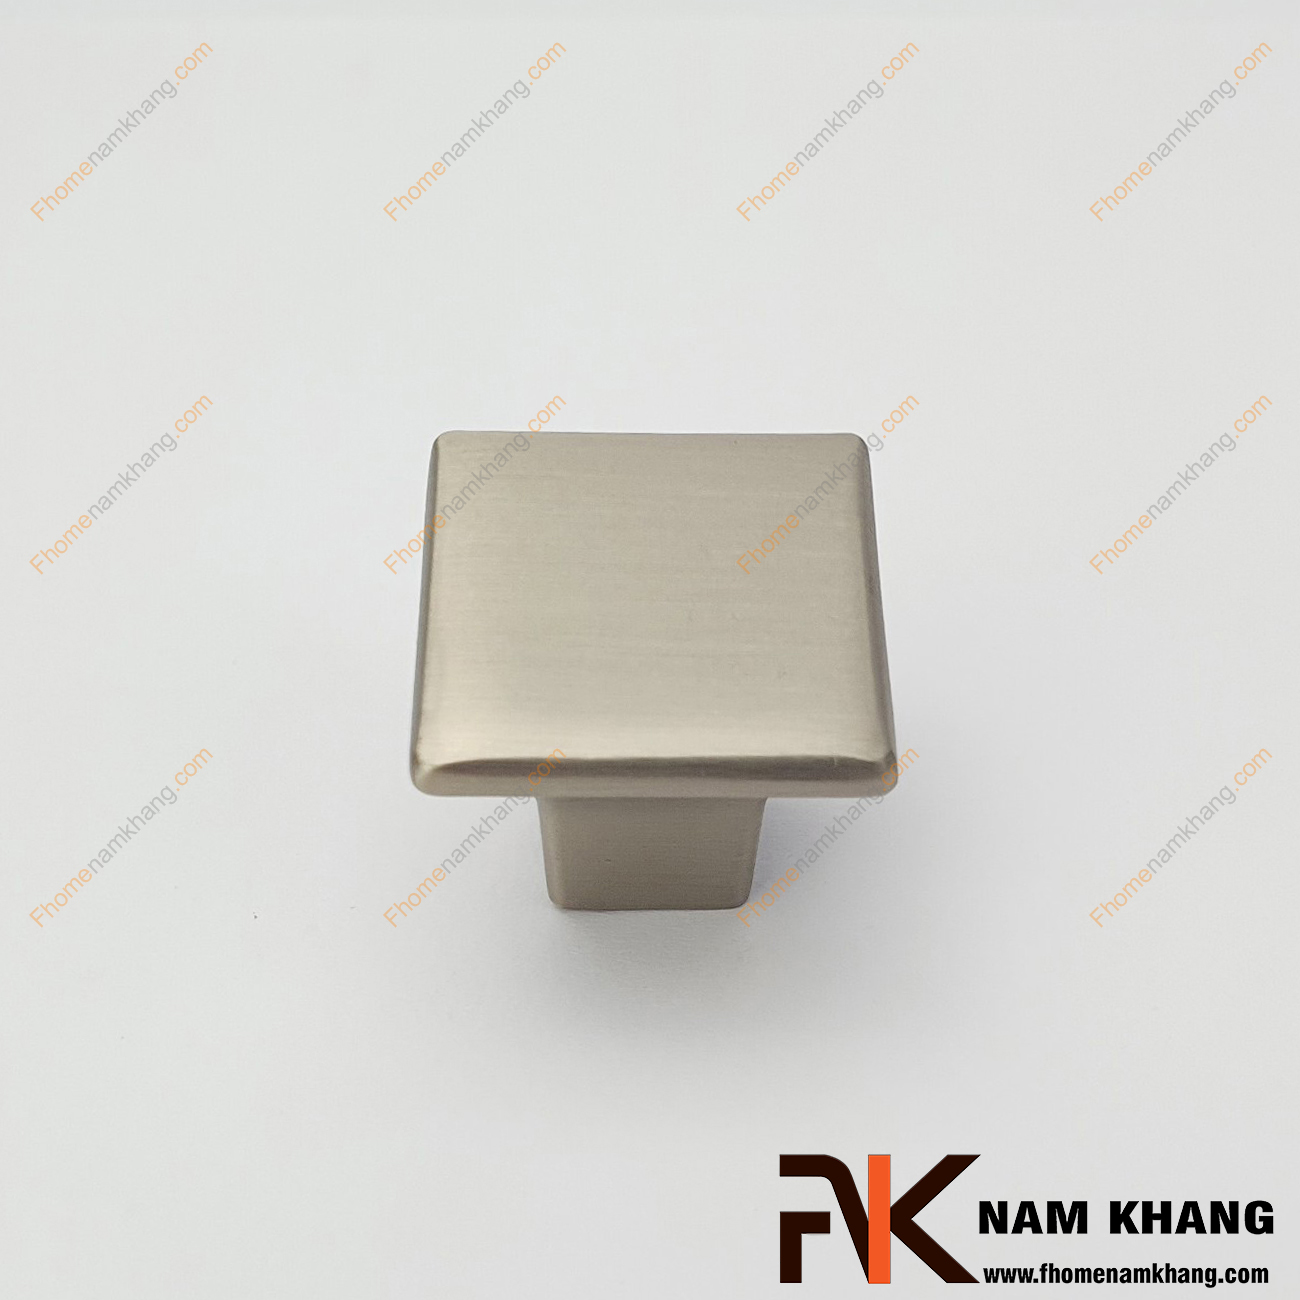 Núm cửa tủ vuông màu inox xước NK026L-INOX là một dạng phụ kiện núm cửa tủ có khuôn dạng vuông và trơn, xung quanh của tay nắm được xử lý bo tròn dễ dàng cầm nắm